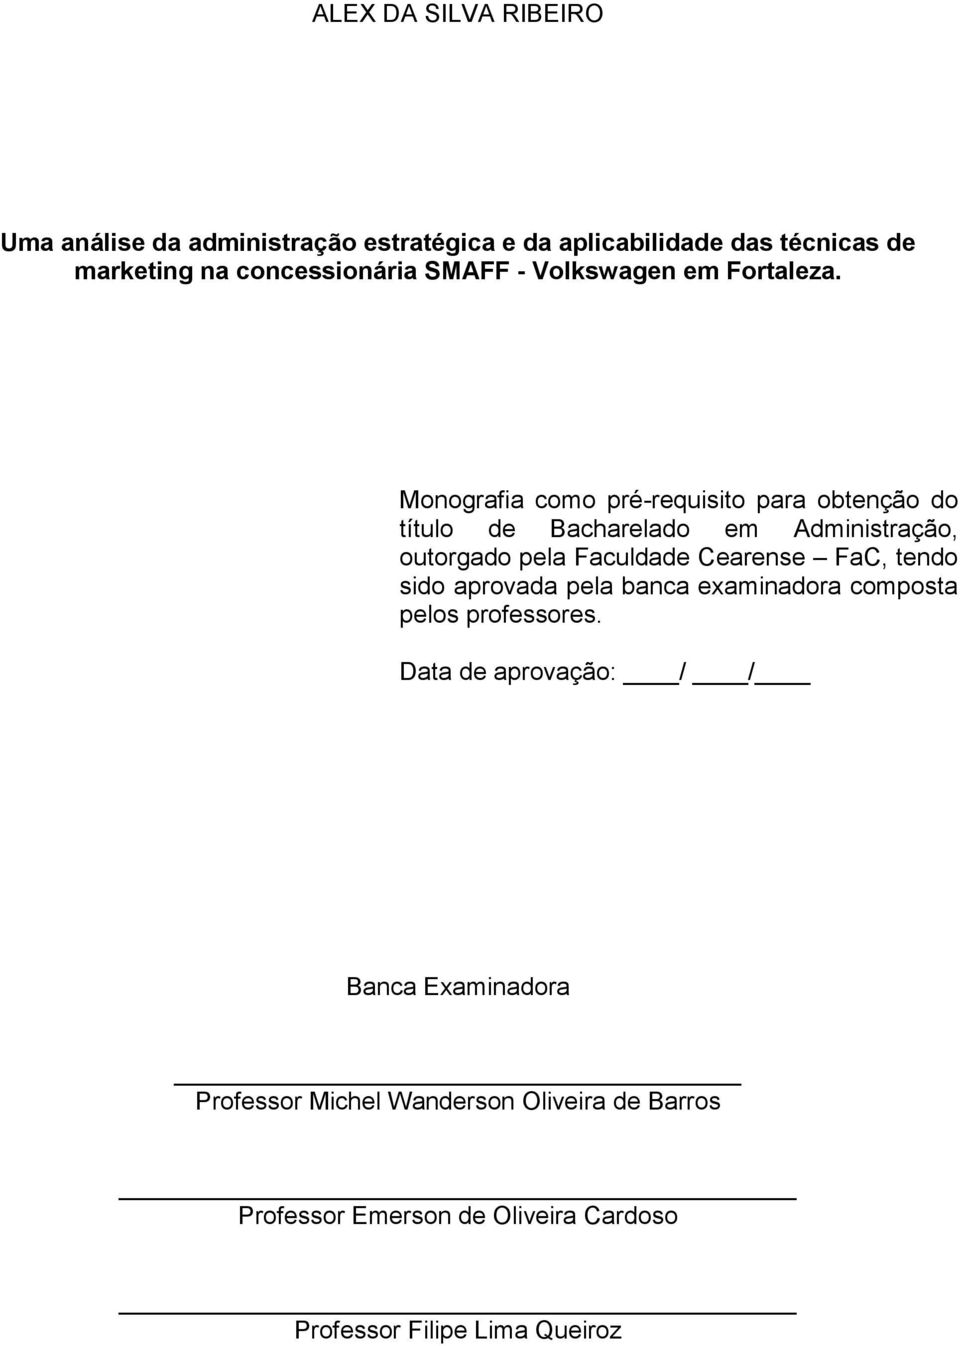 Monografia como pré-requisito para obtenção do título de Bacharelado em Administração, outorgado pela Faculdade Cearense FaC,